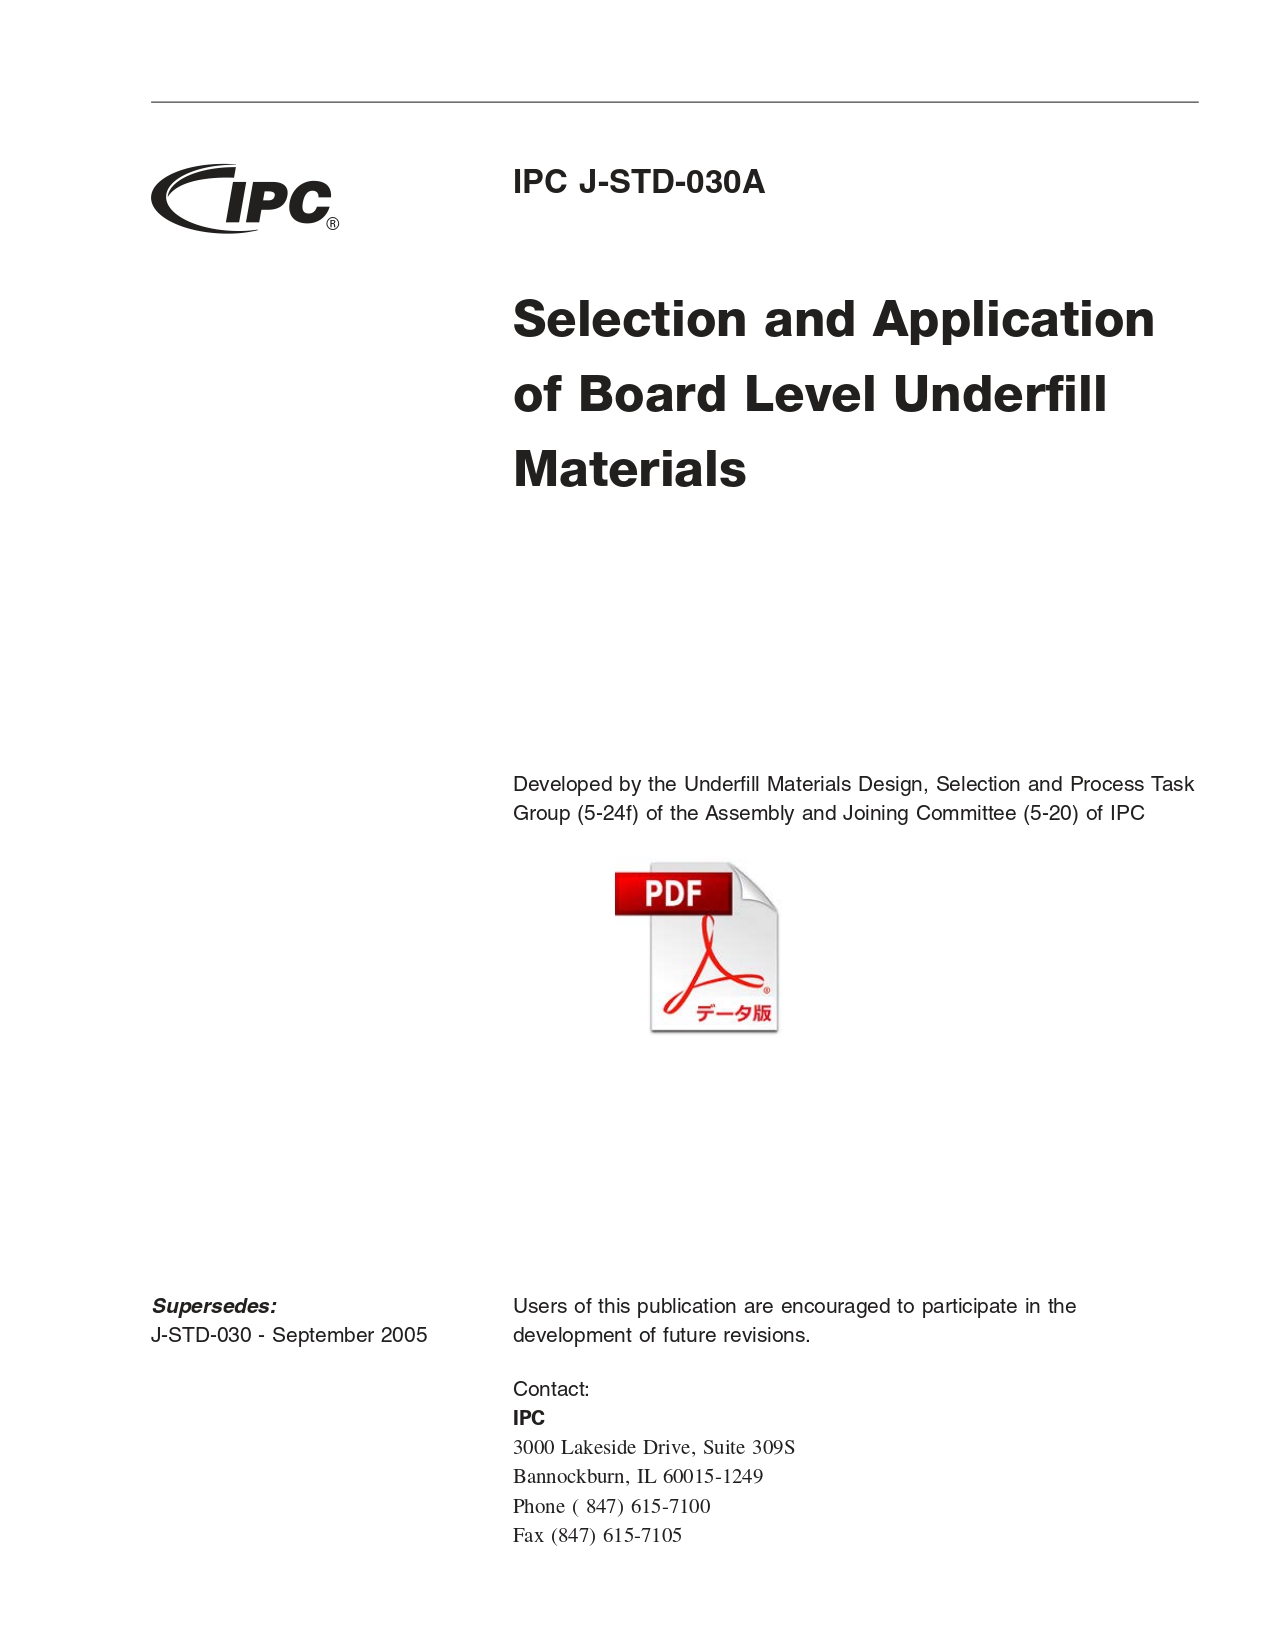 ［英語版］IPC J-STD-030A: Selection and Application of Board Level Underfill Materials